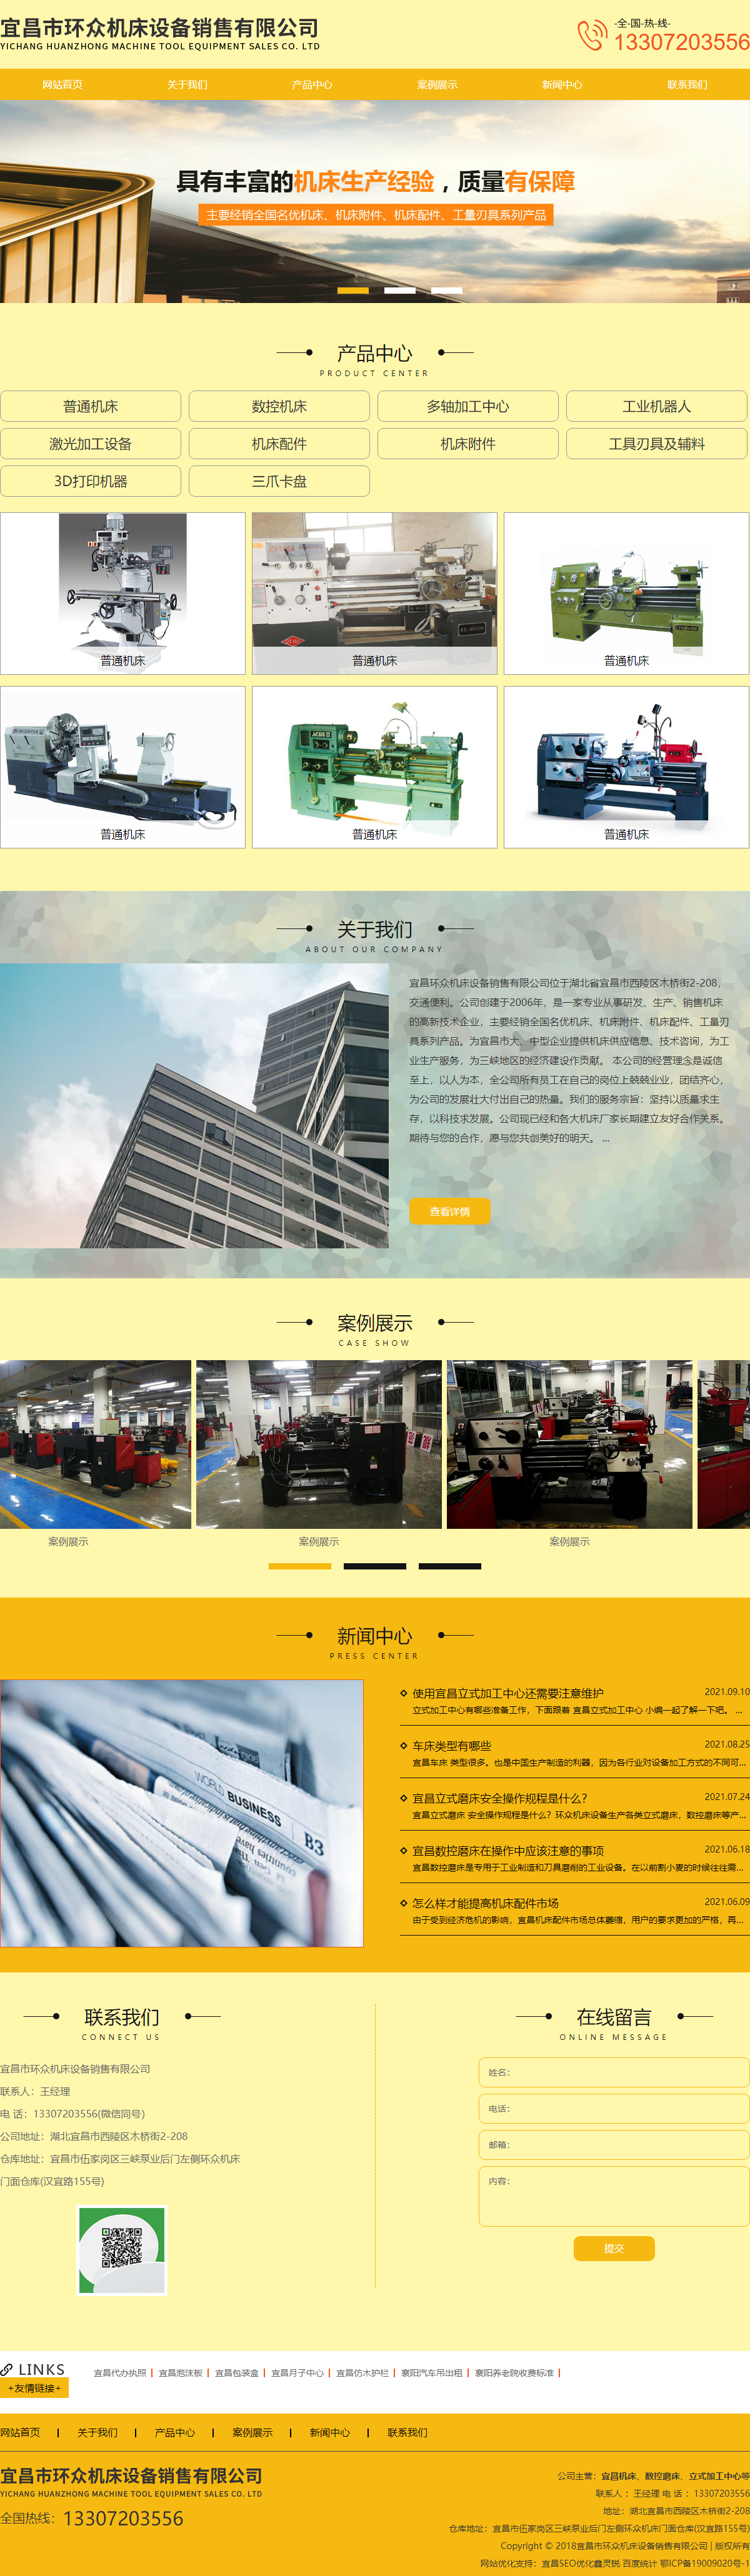 宜昌市环众机床设备销售有限公司网站案例